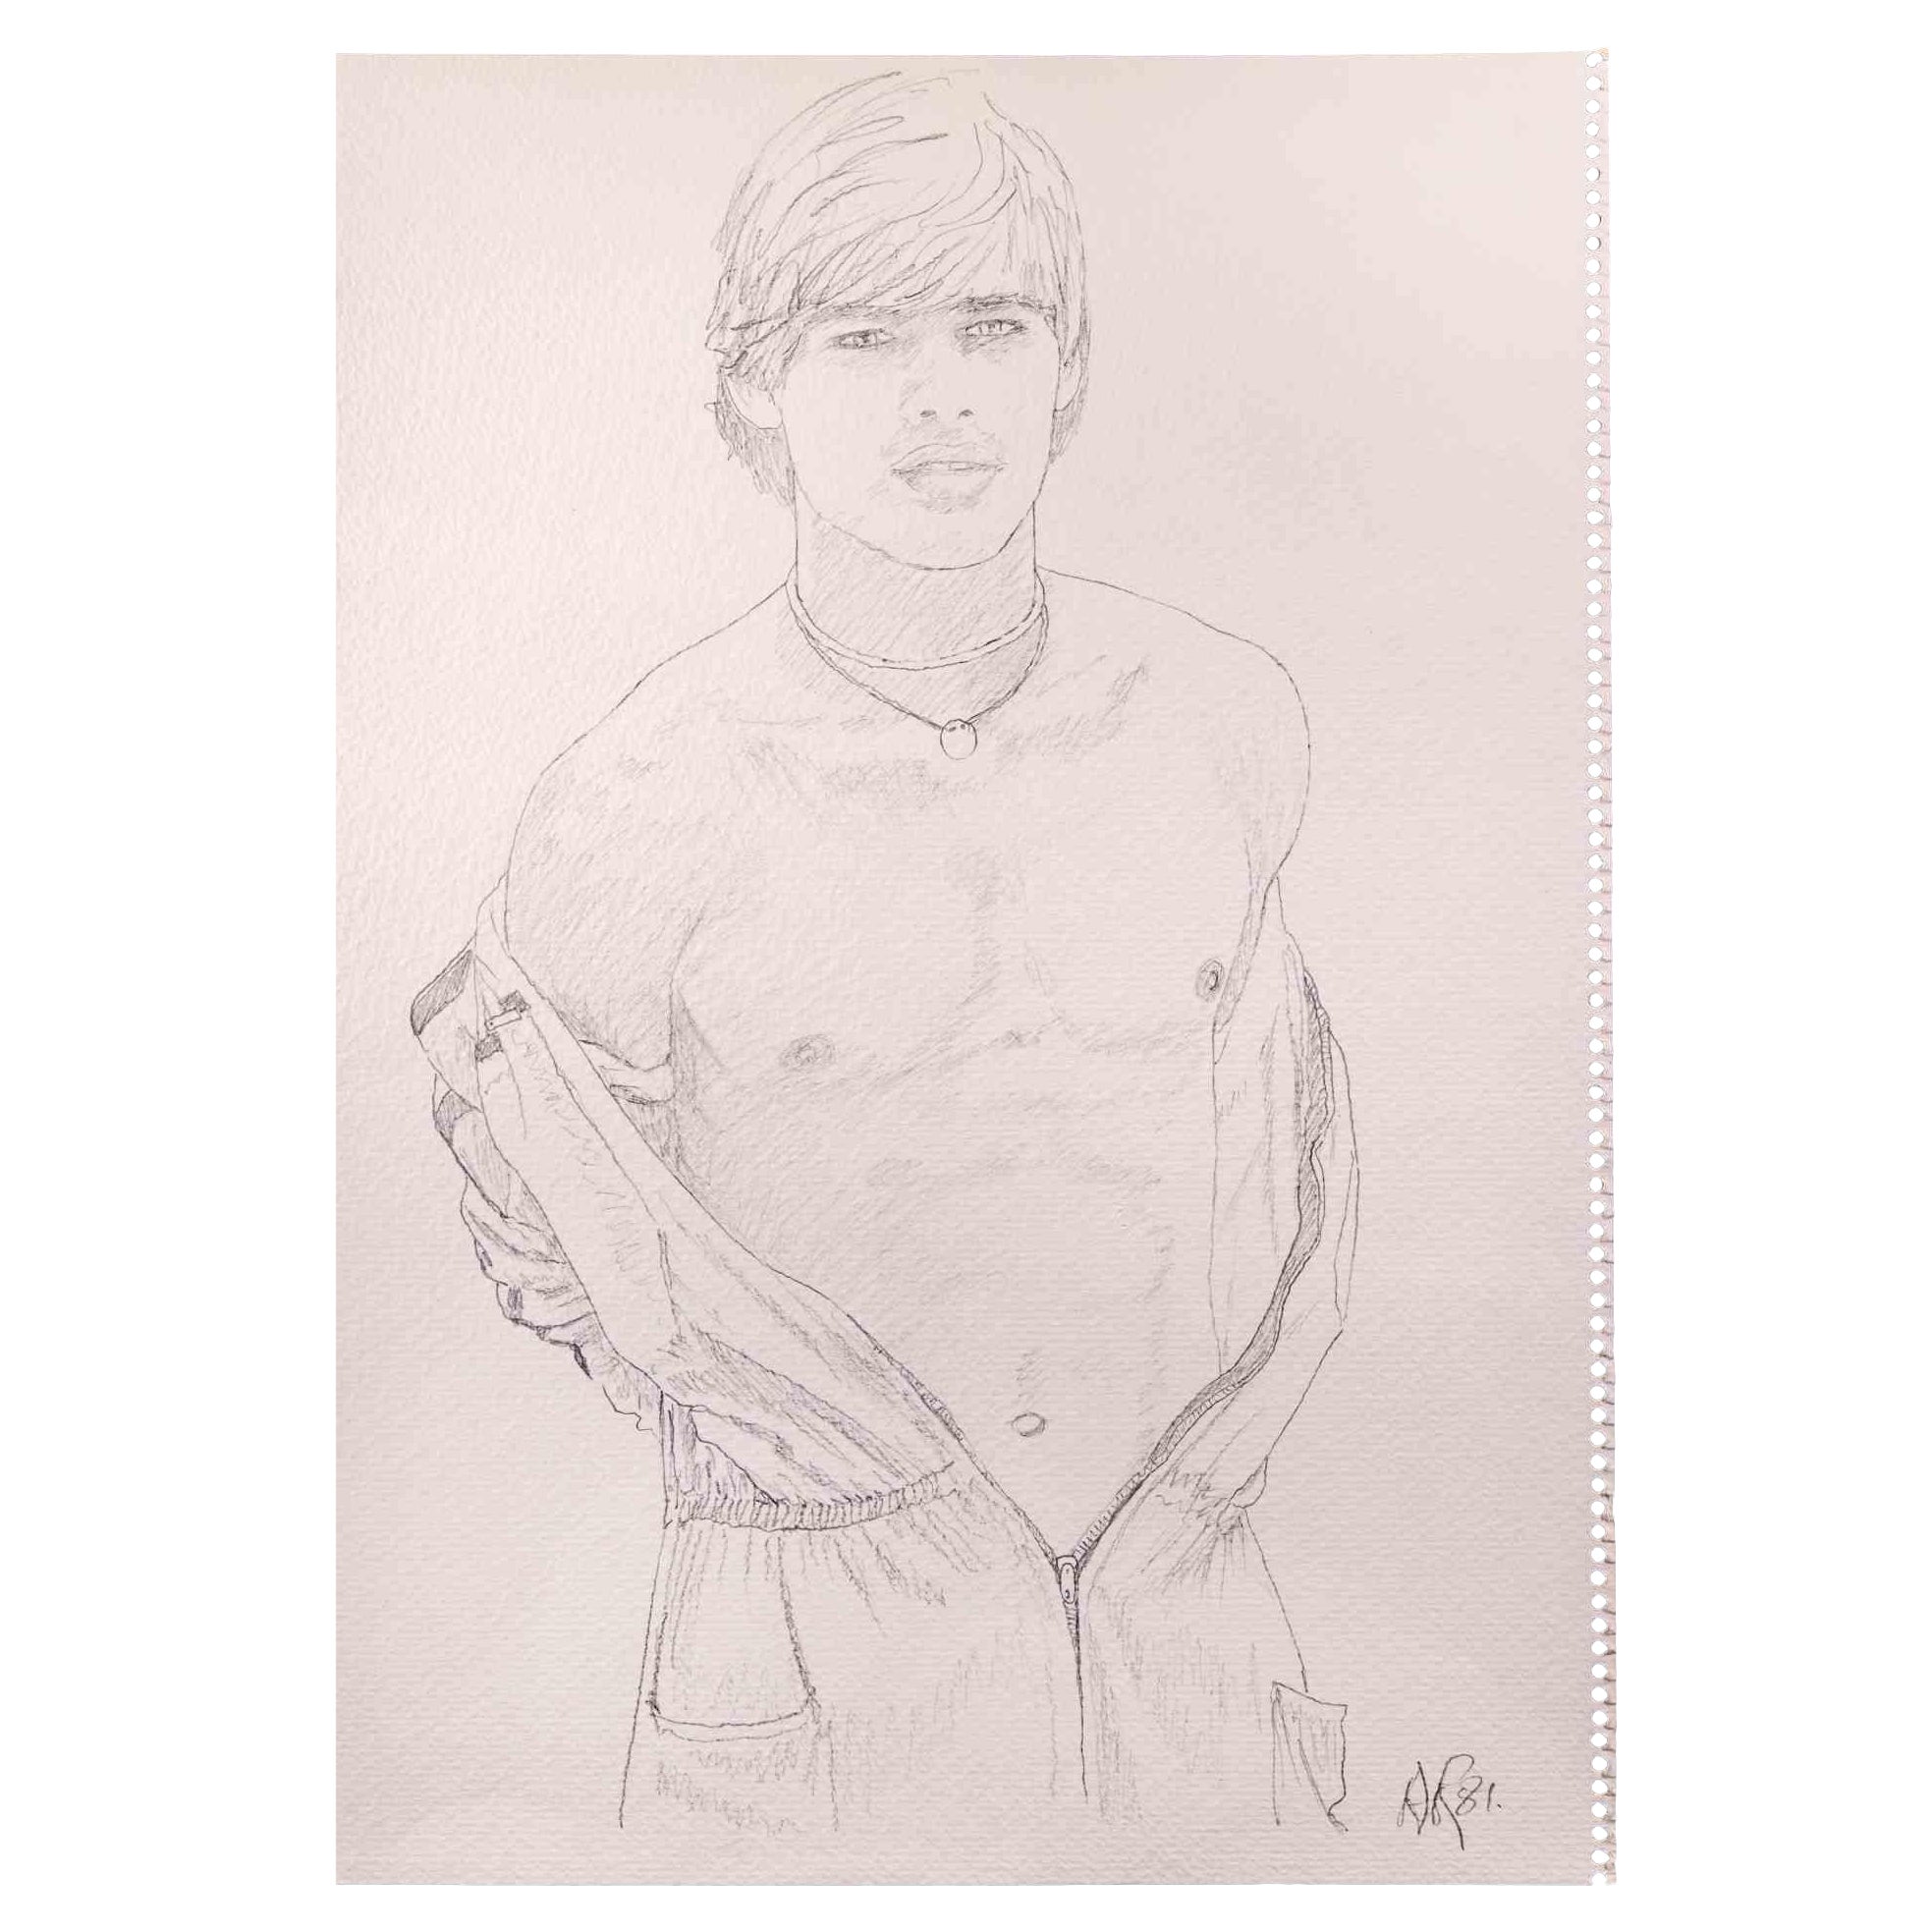 Das Porträt eines Jungen ist eine Originalzeichnung mit Bleistift von Anthony Roaland aus dem Jahr 1981. Vom Künstler am rechten unteren Rand handsigniert und datiert. 

Die Künstlerin möchte eine ausgewogene Komposition durch weiche und zarte